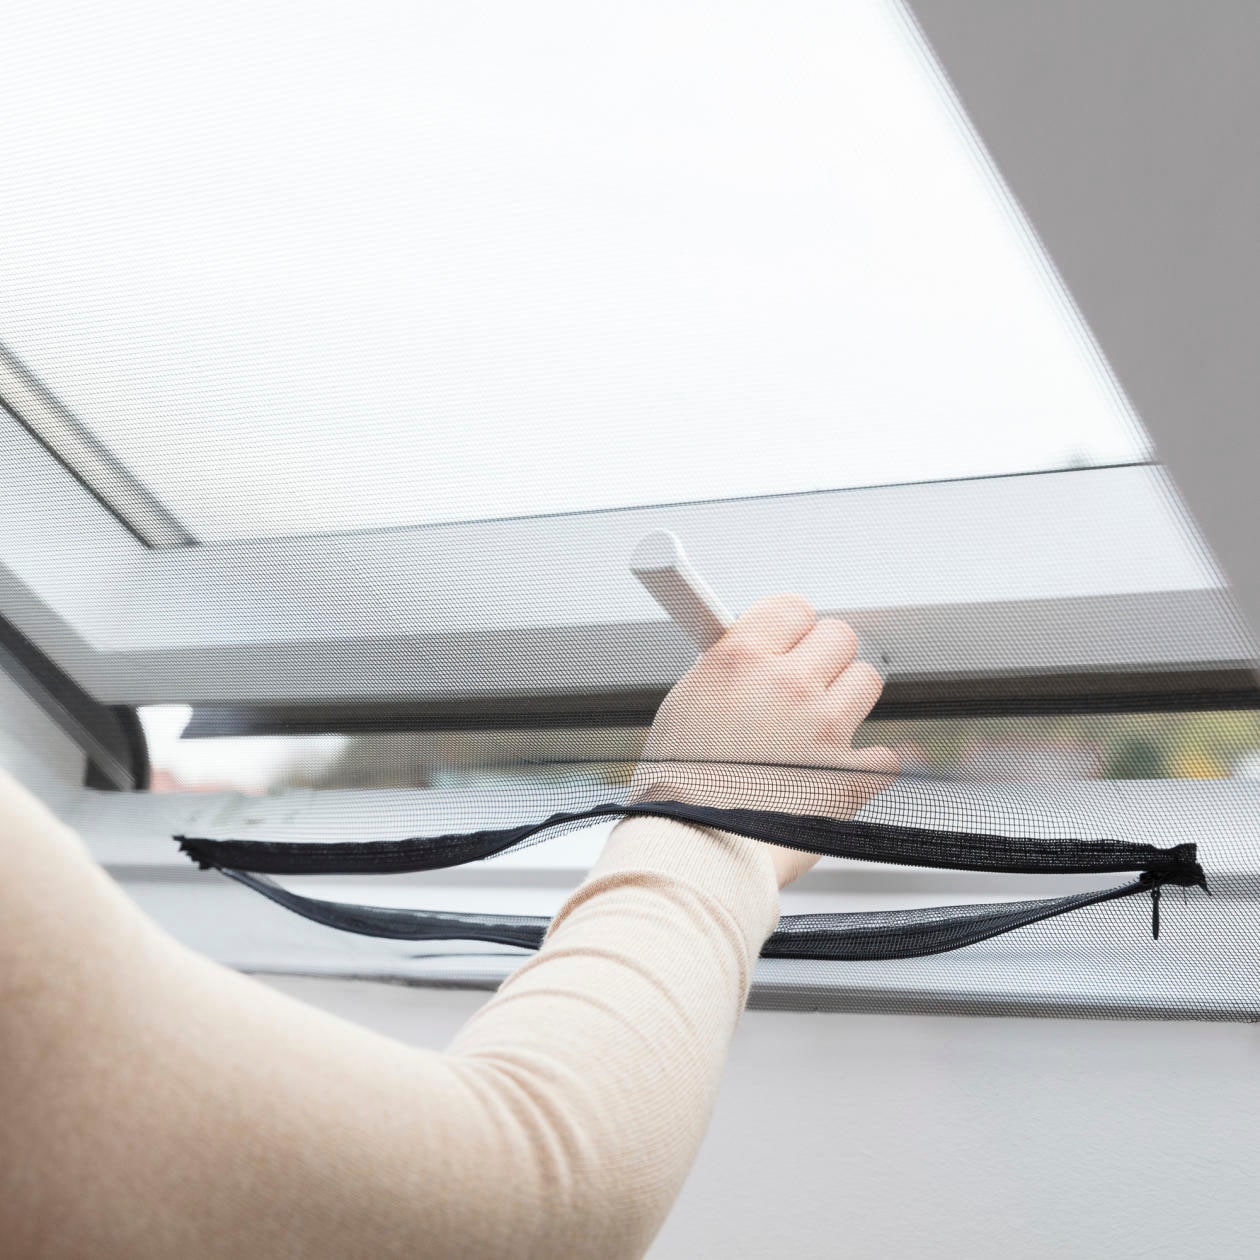 K-HOME Fliegengitter-Gewebe »Insektenschutz«, für Fenster und Dachfenster, mit Sonnenschutz, BxH: 150 x 180 cm